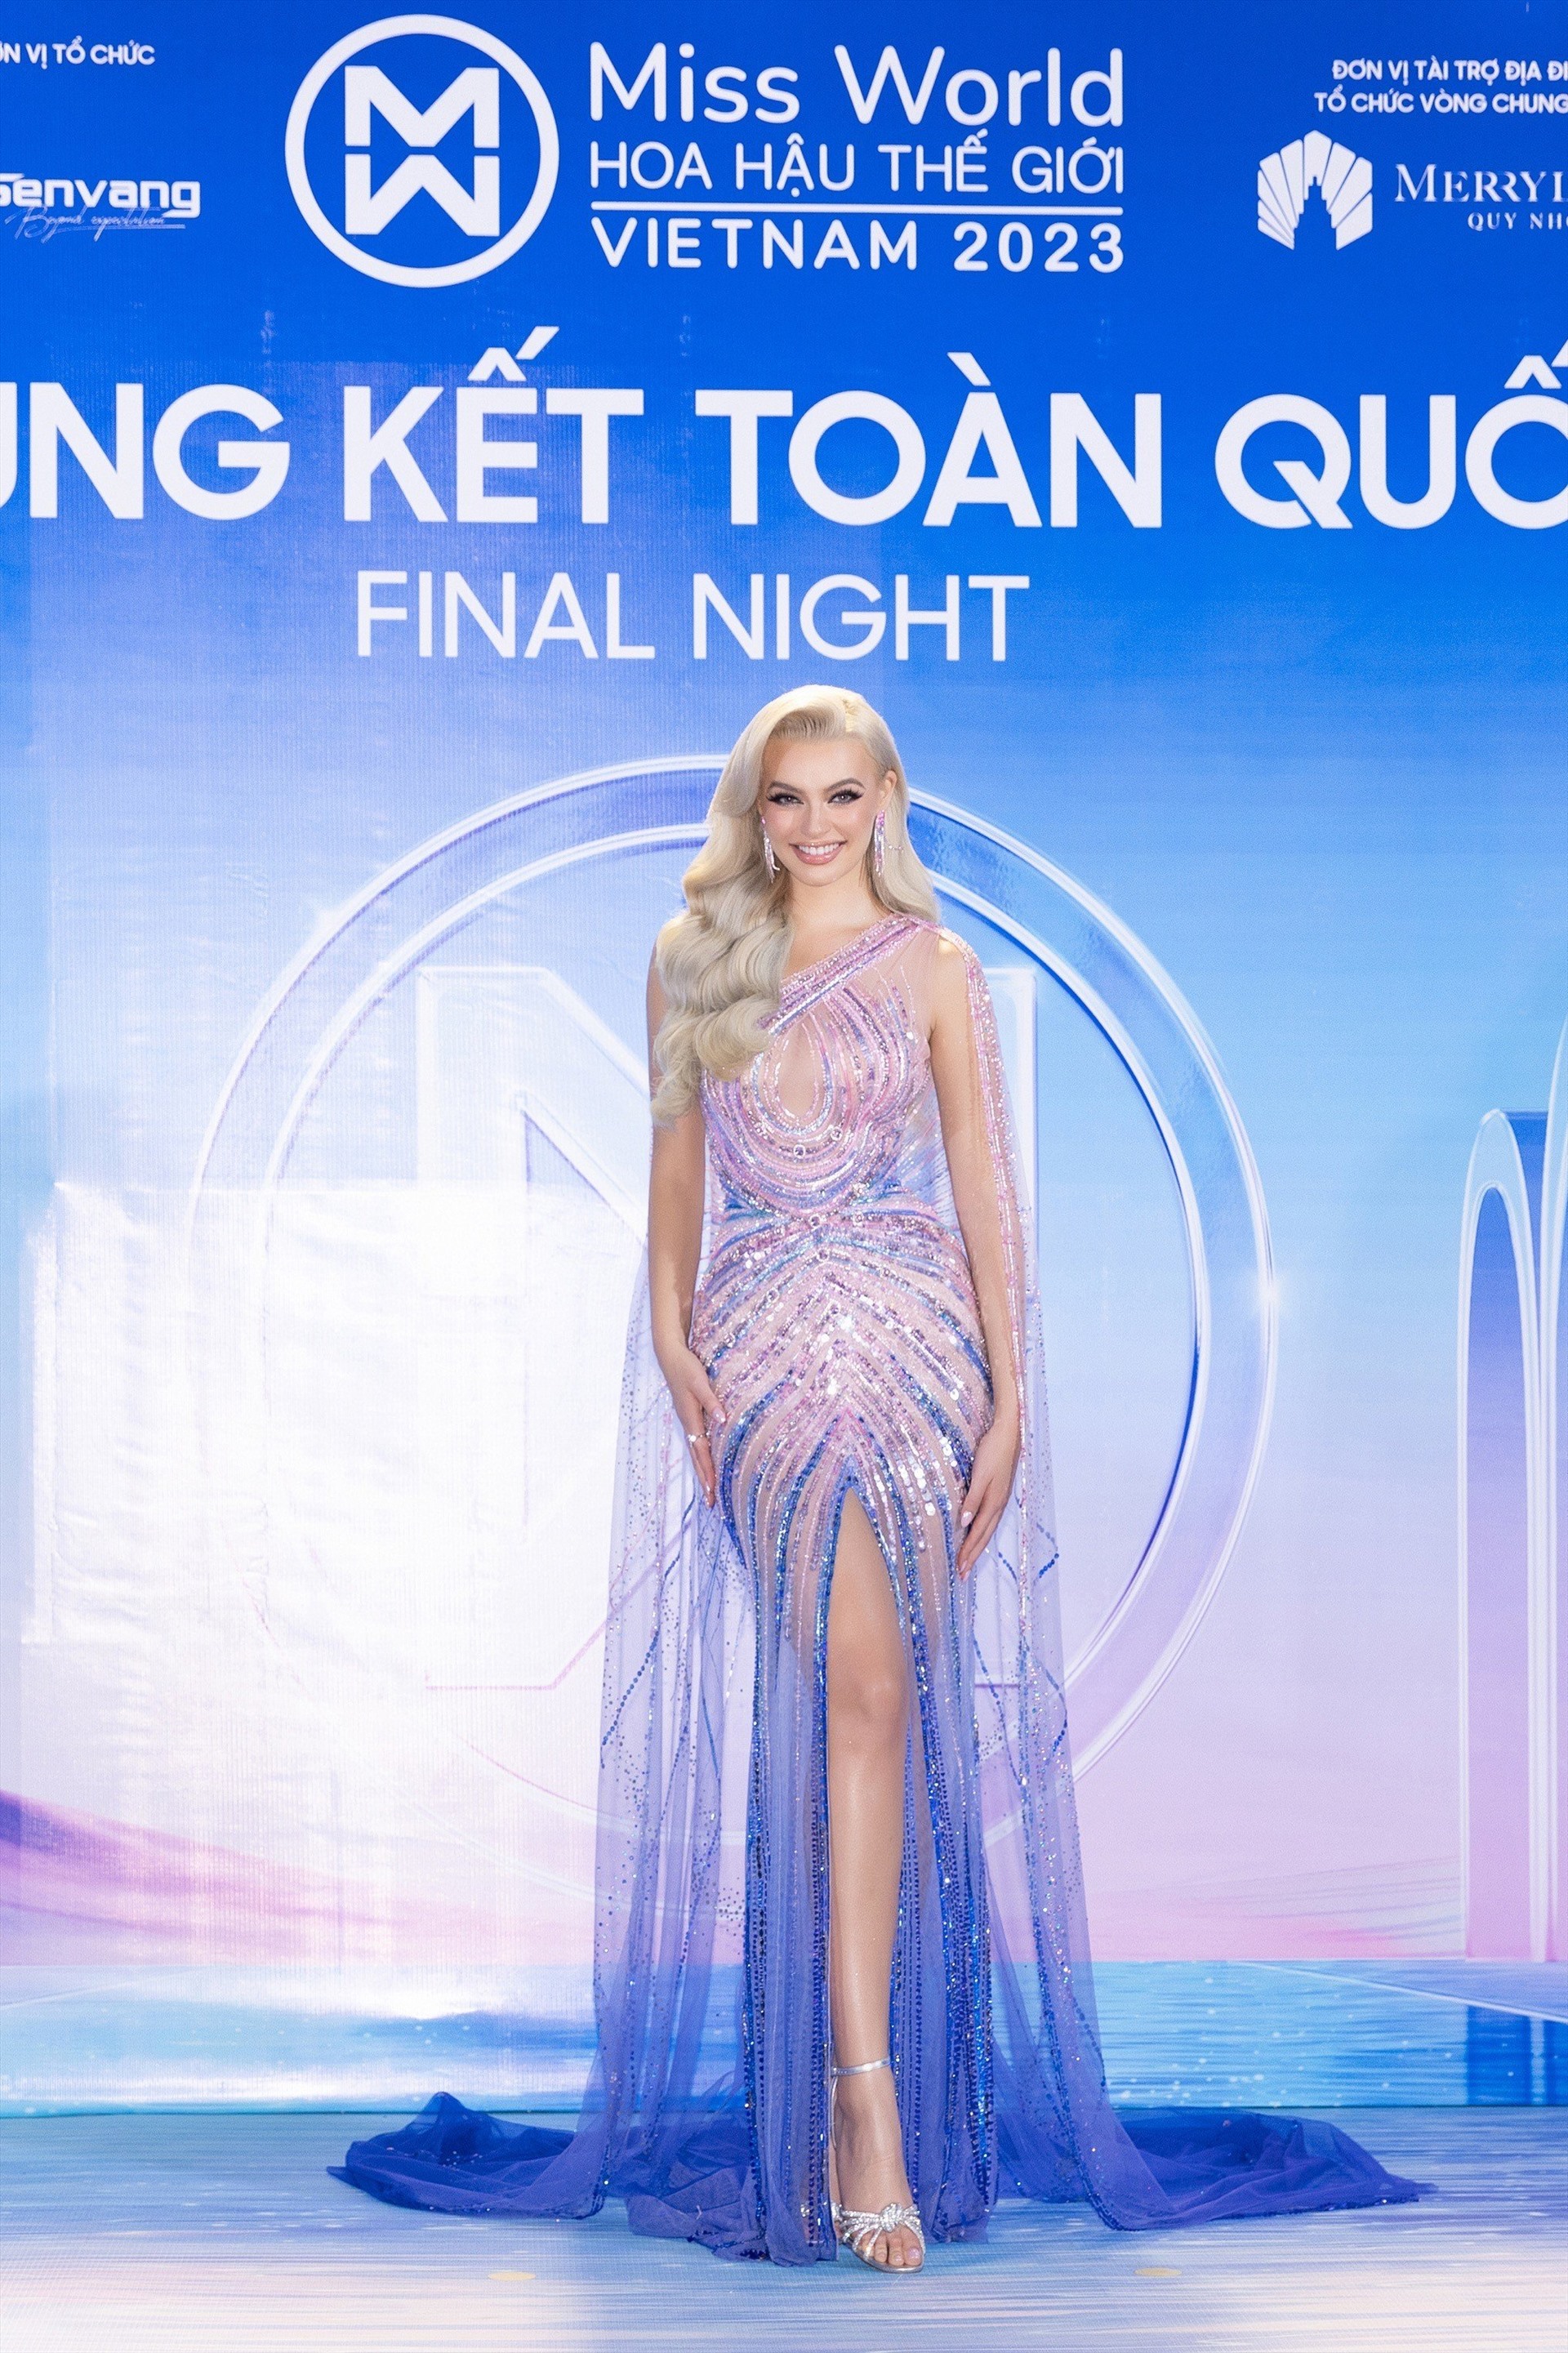 Chung kết Miss World Vietnam 2023 một lần nữa chào đón đương kim Miss World - Karolina Bielawska. 